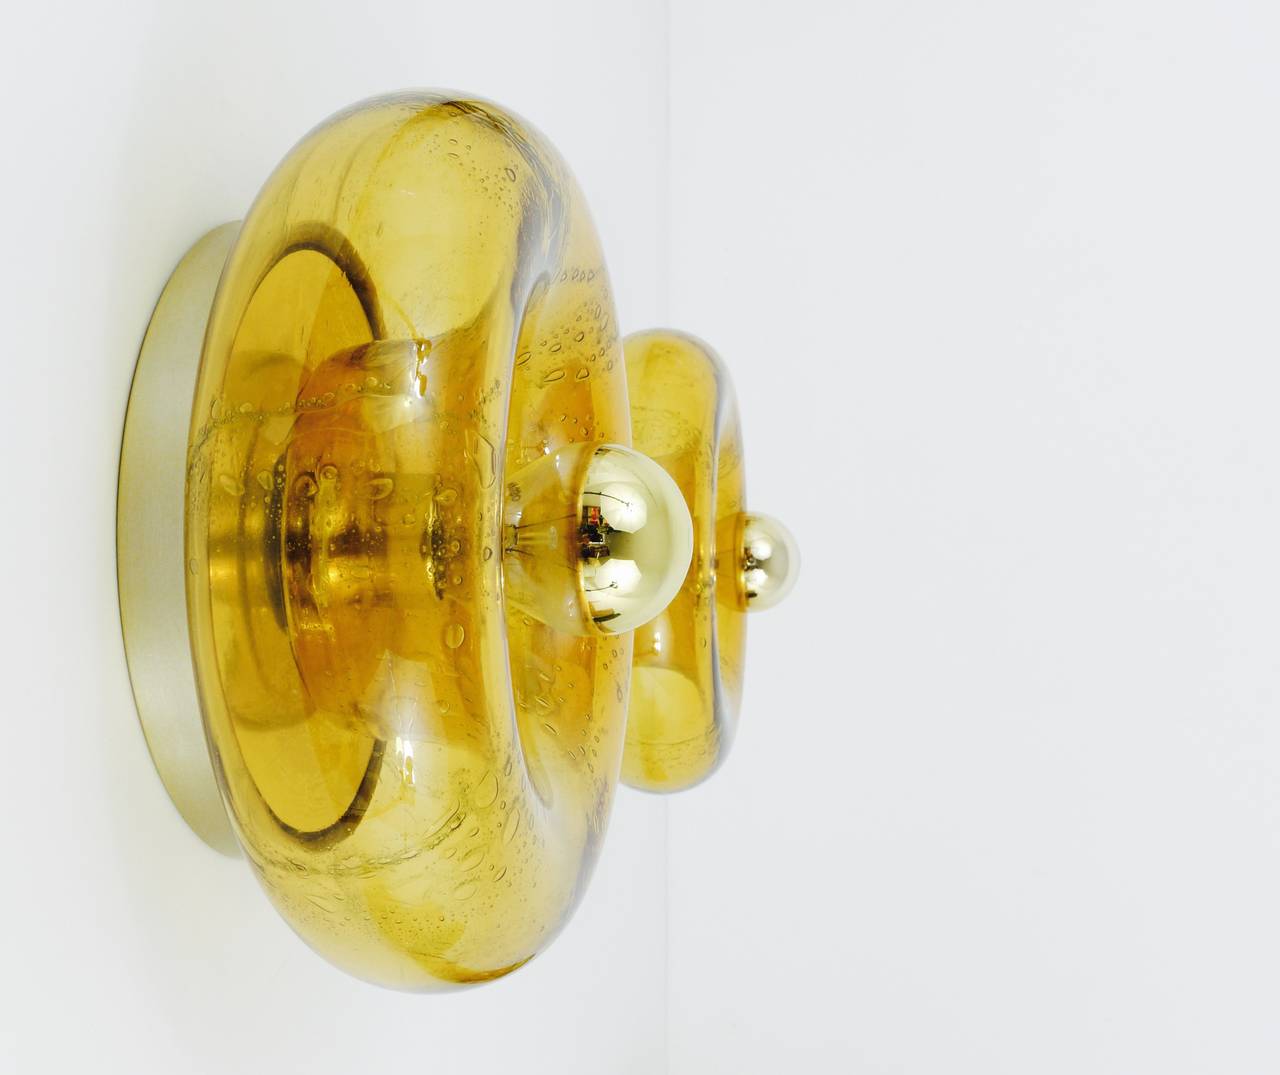 Une applique ronde en verre, réalisée par Doria Leuchten, Allemagne, dans les années 1970. Très belle pièce soufflée à la main en verre jaune ambré avec de belles bulles et une surface irisée. En parfait état. Une lumière magnifique. 